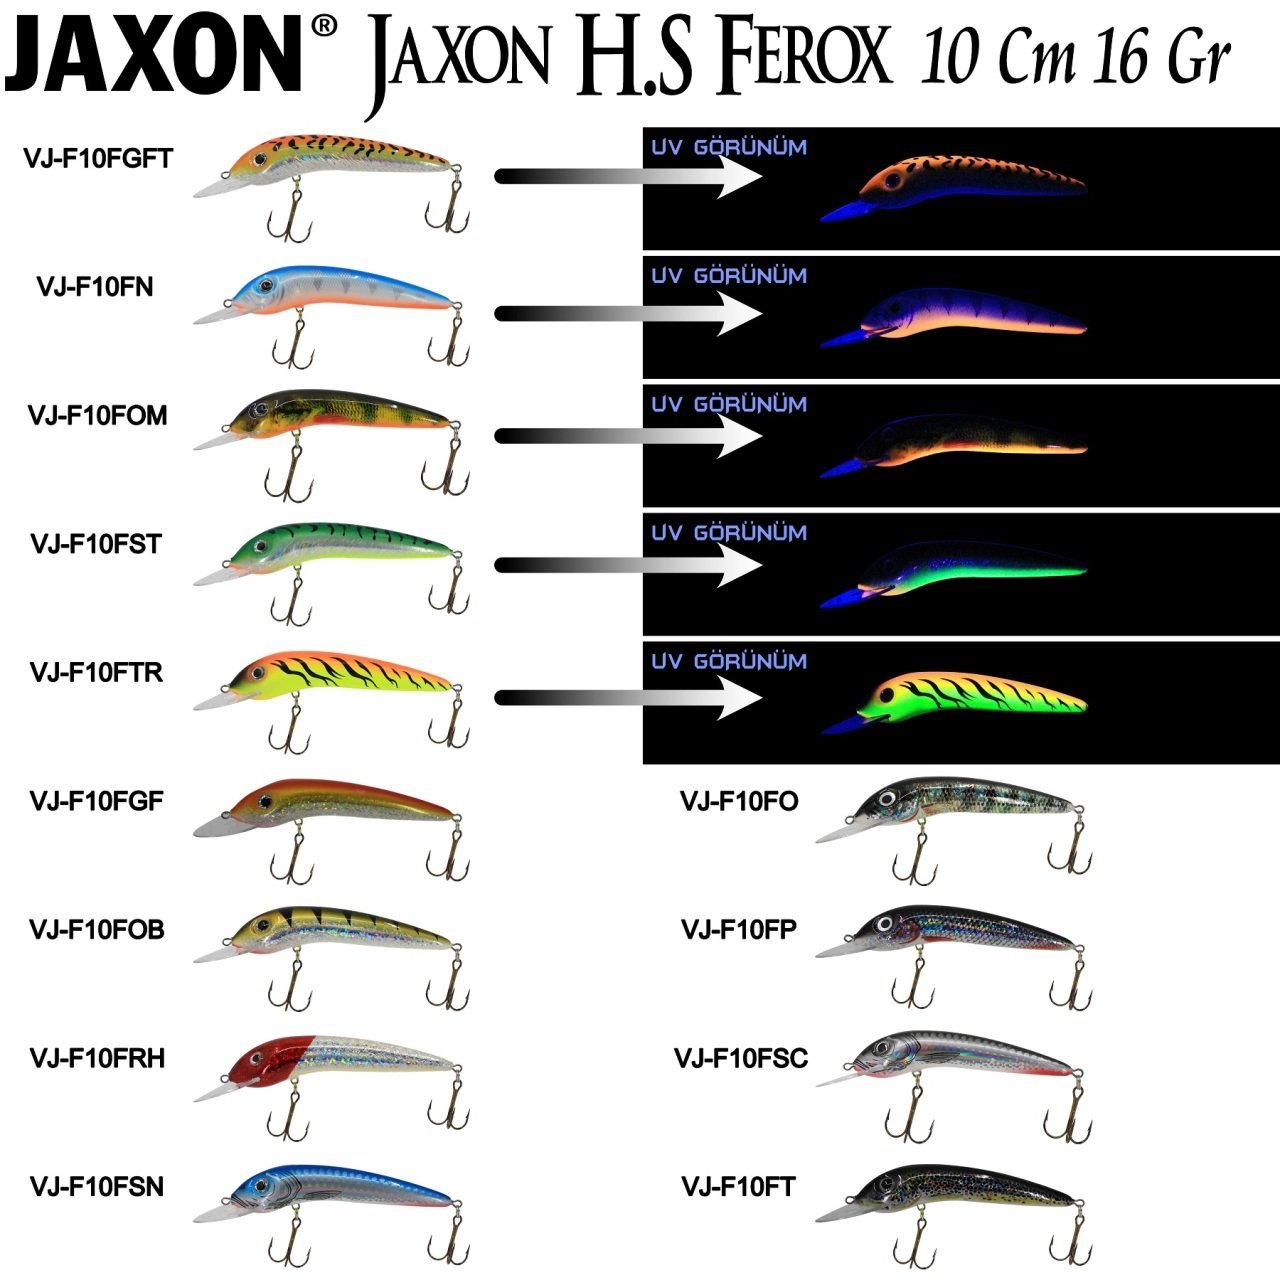 Jaxon H.S Ferox 10 Cm Ft